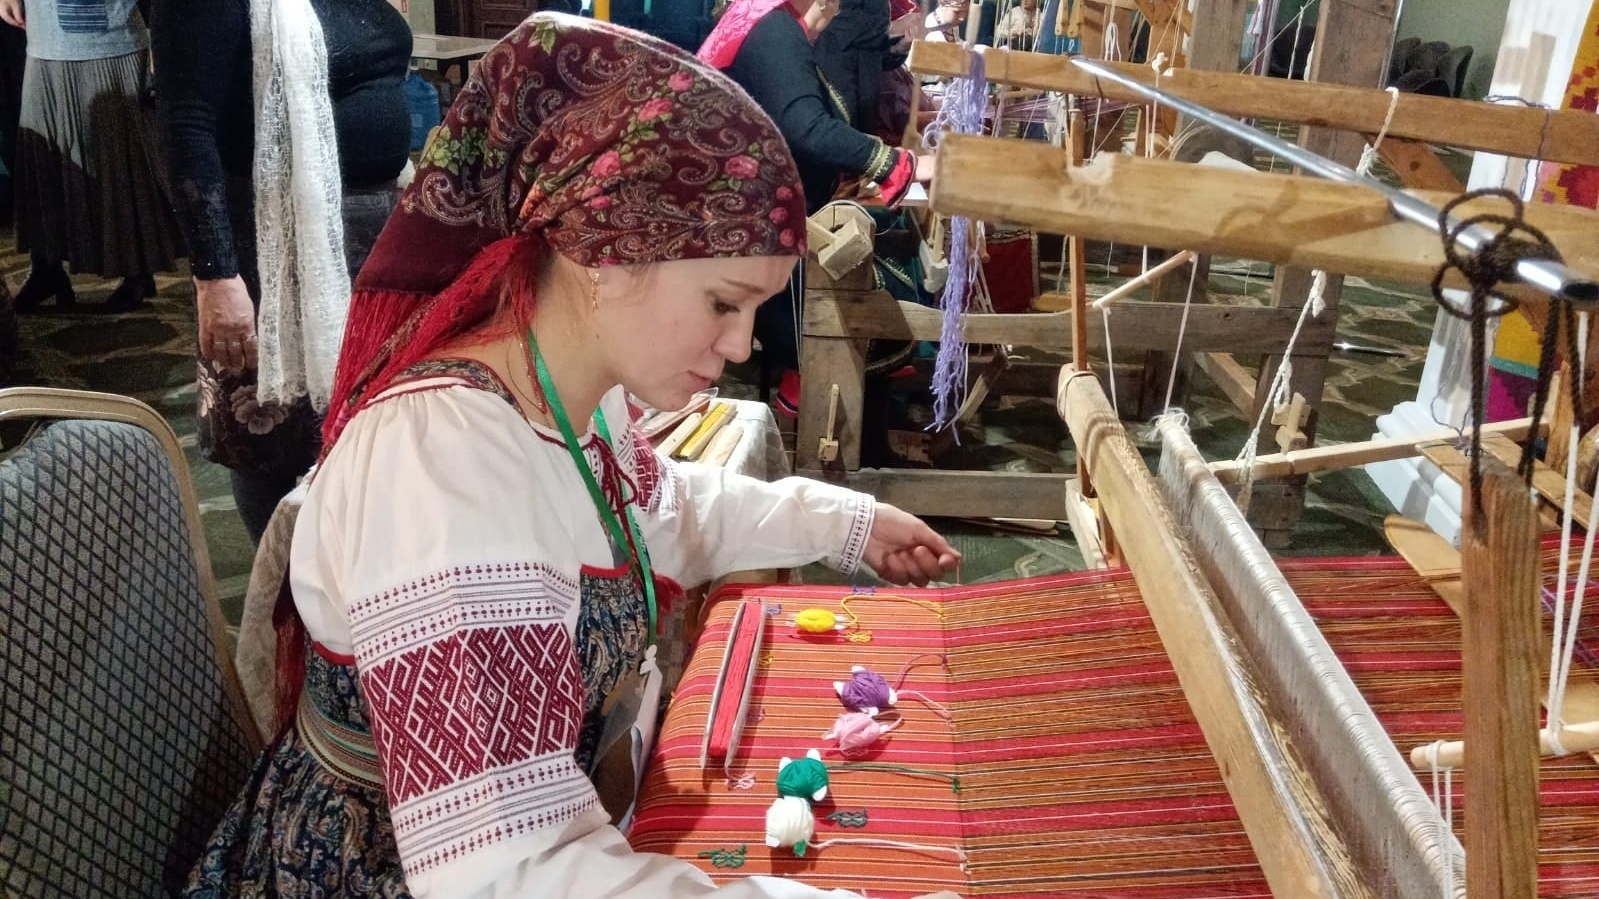 "Ткачество – космос": мастерица на Урале делает уникальные пояса и скатерти